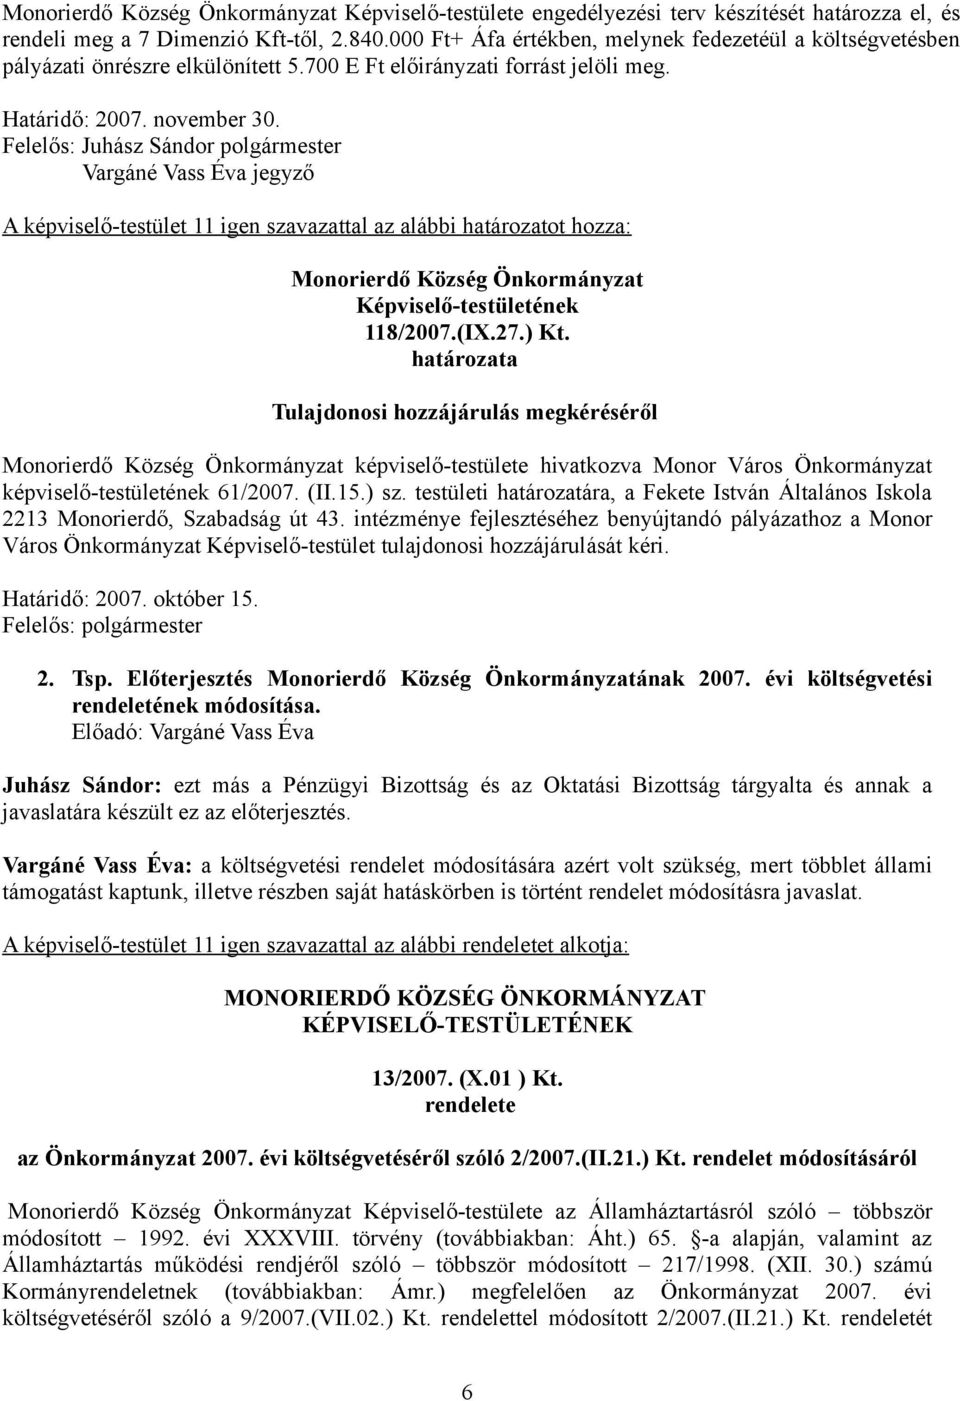 Felelős: Juhász Sándor polgármester Vargáné Vass Éva jegyző A képviselő-testület 11 igen szavazattal az alábbi határozatot hozza: Képviselő-testületének 118/2007.(IX.27.) Kt.